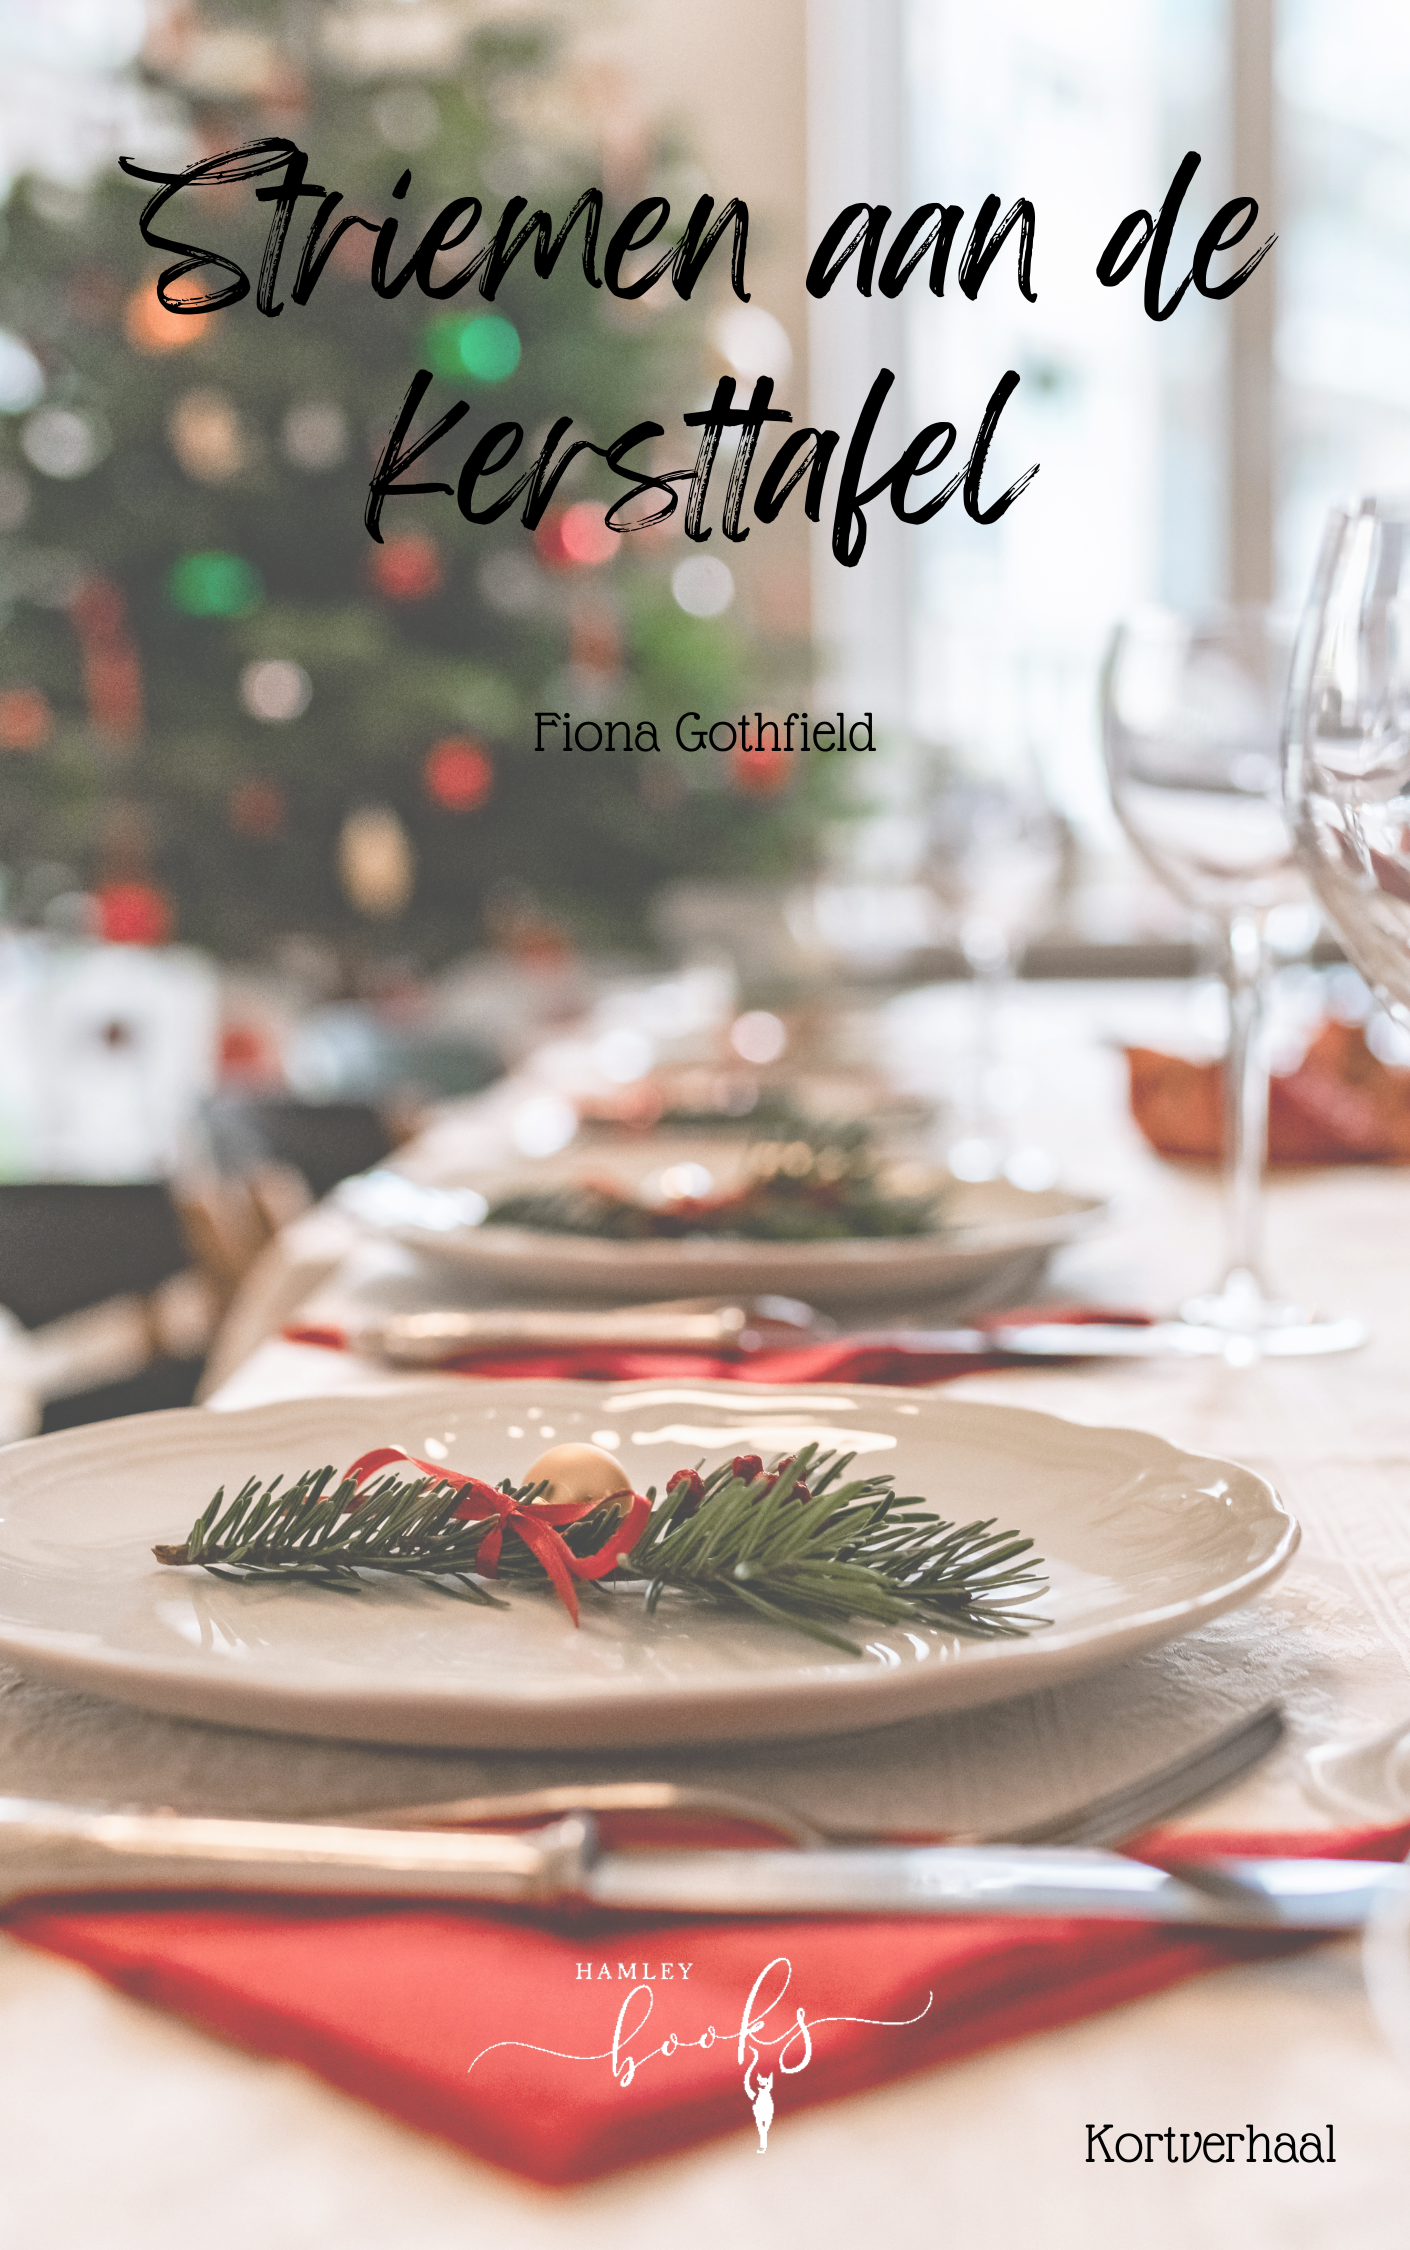 Striemen aan de kersttafel – Fiona Gothfield – Gratis Epub – PDF versie